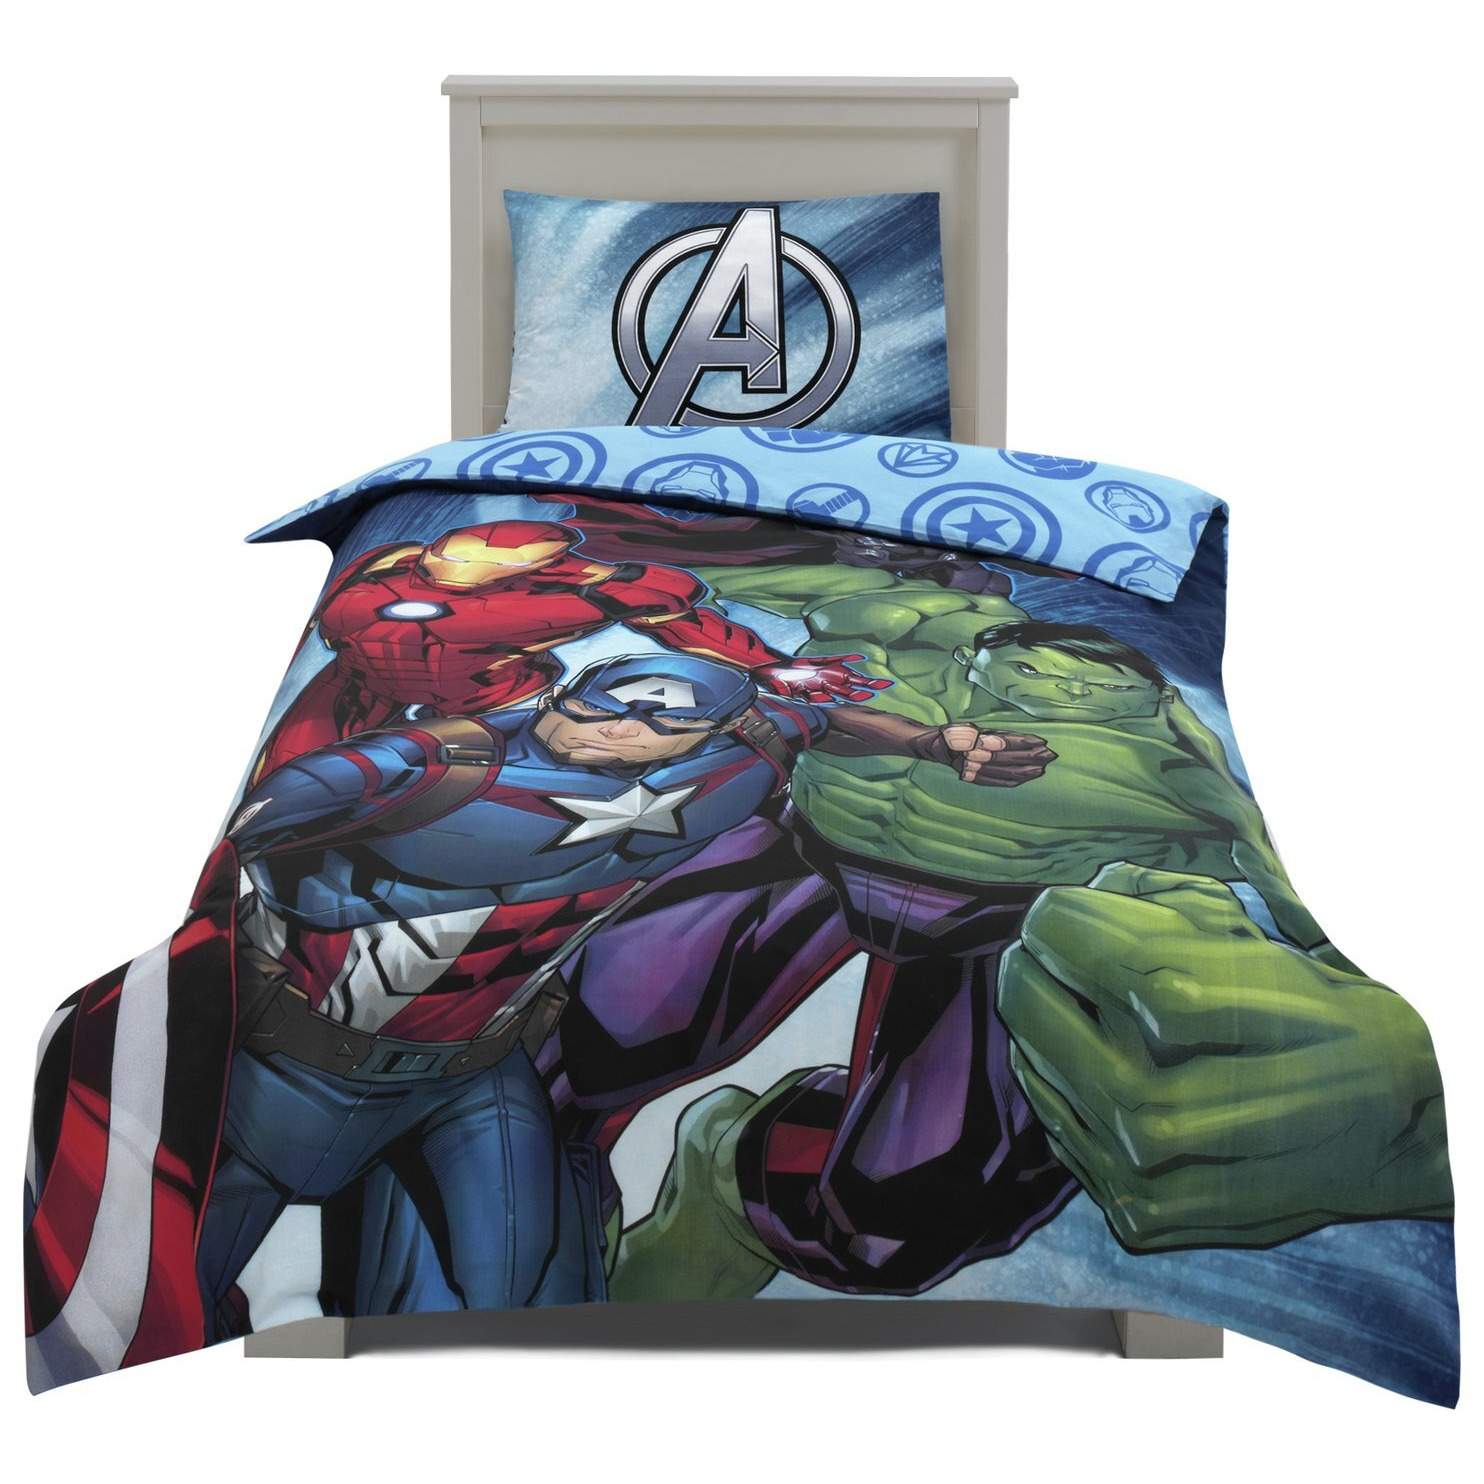 Marvel Kids Blue Bedding Set - Single - image 1